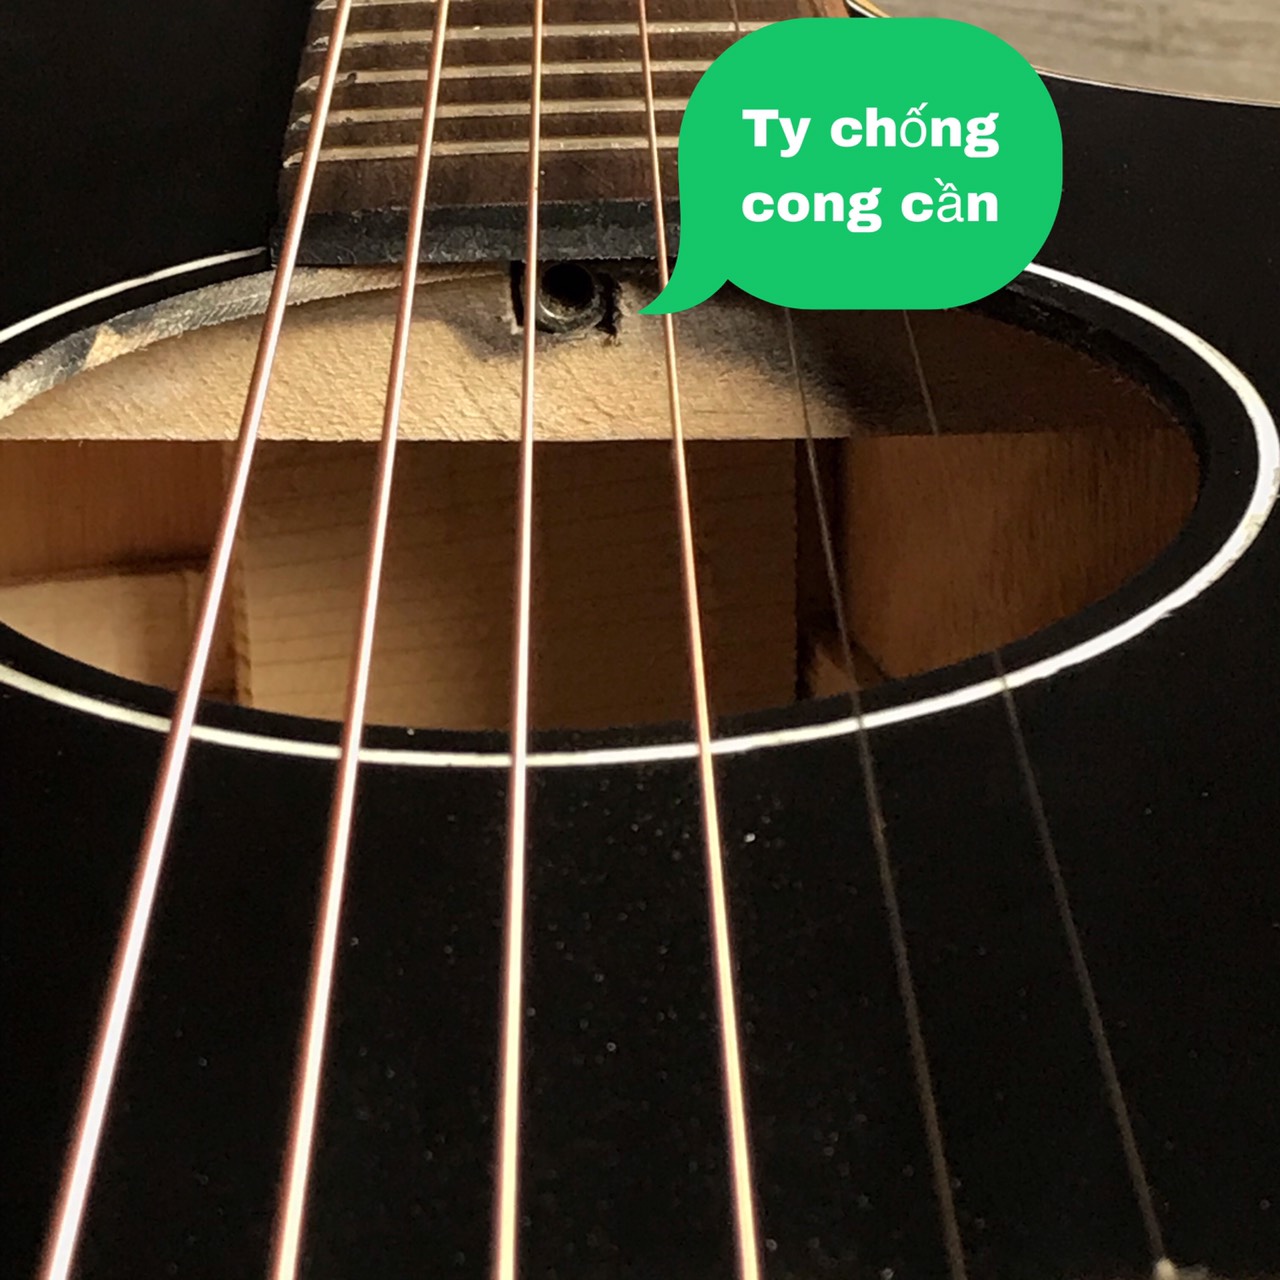 Đàn guitar acoustic tập chơi - Kết nối EQ ra loa - Mặt gỗ thông có ty chống cong cần...